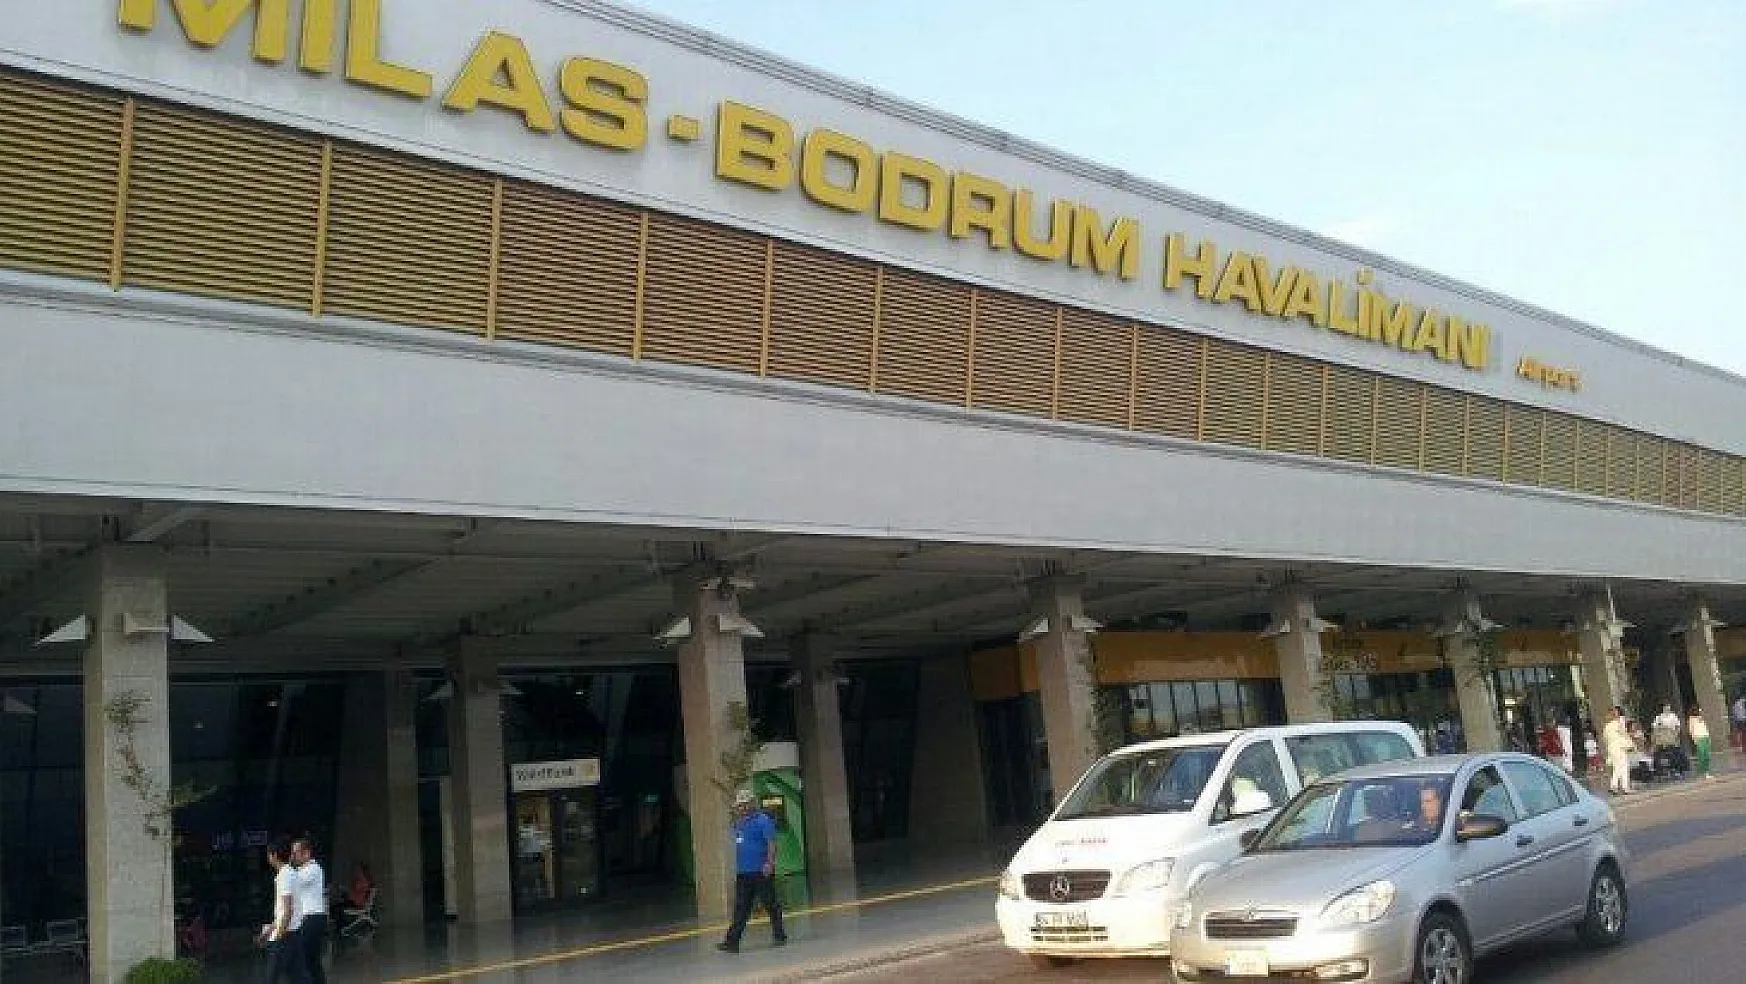 Özer 'Bodrum değil, Milas Bodrum Havalimanı'